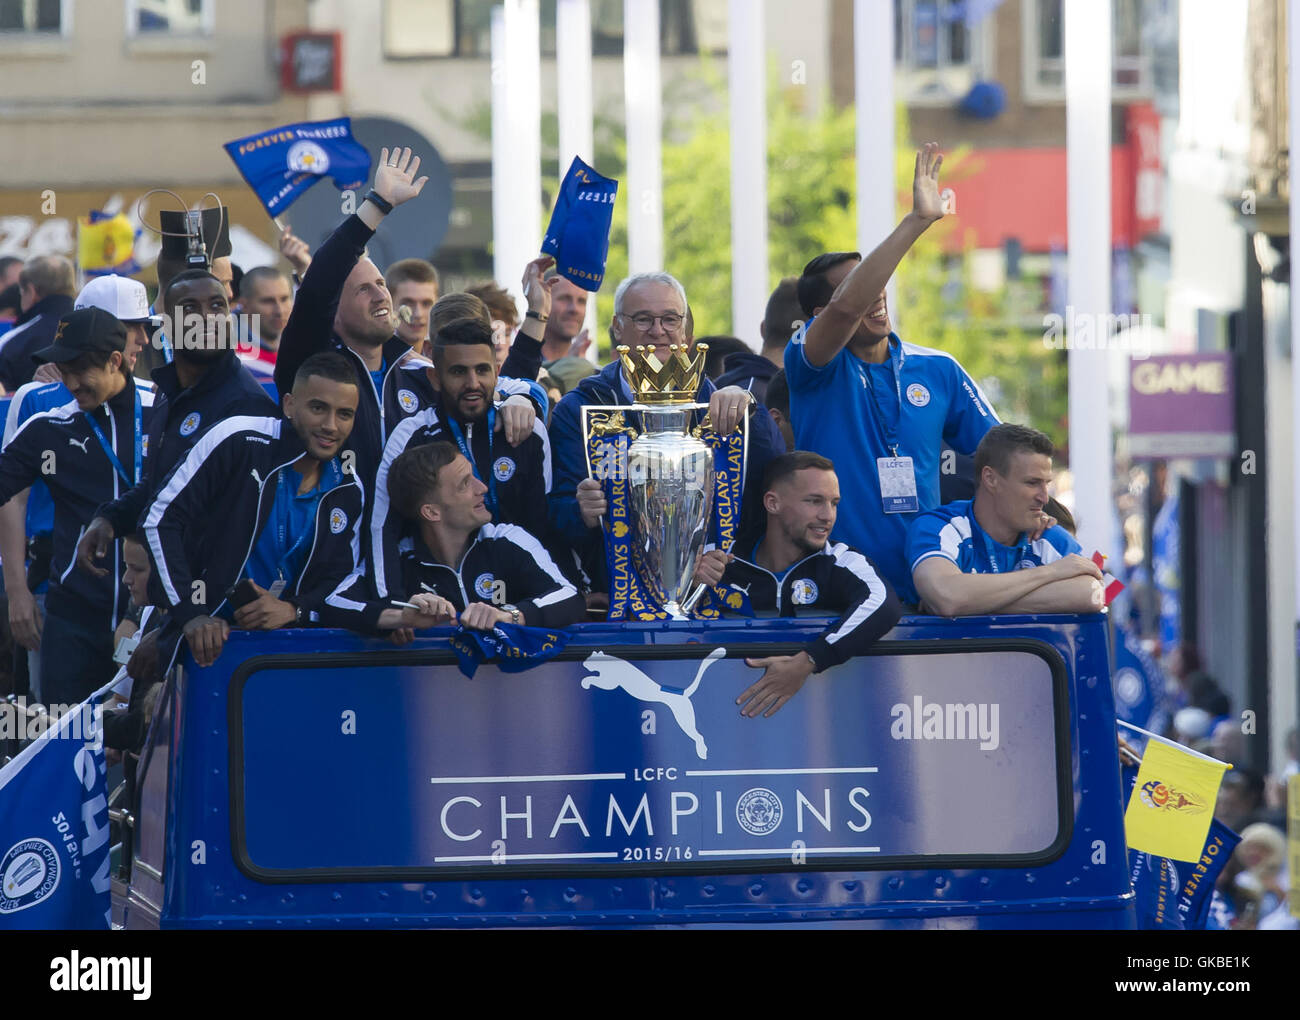 El Leicester City F.C. Los ganadores de la League, desfile que incluye: de fútbol de la ciudad de Leicester, Claudio Ranieri, Danny Drinkwater, Mahrez, Danny Simpson, Robert Huth, Andy